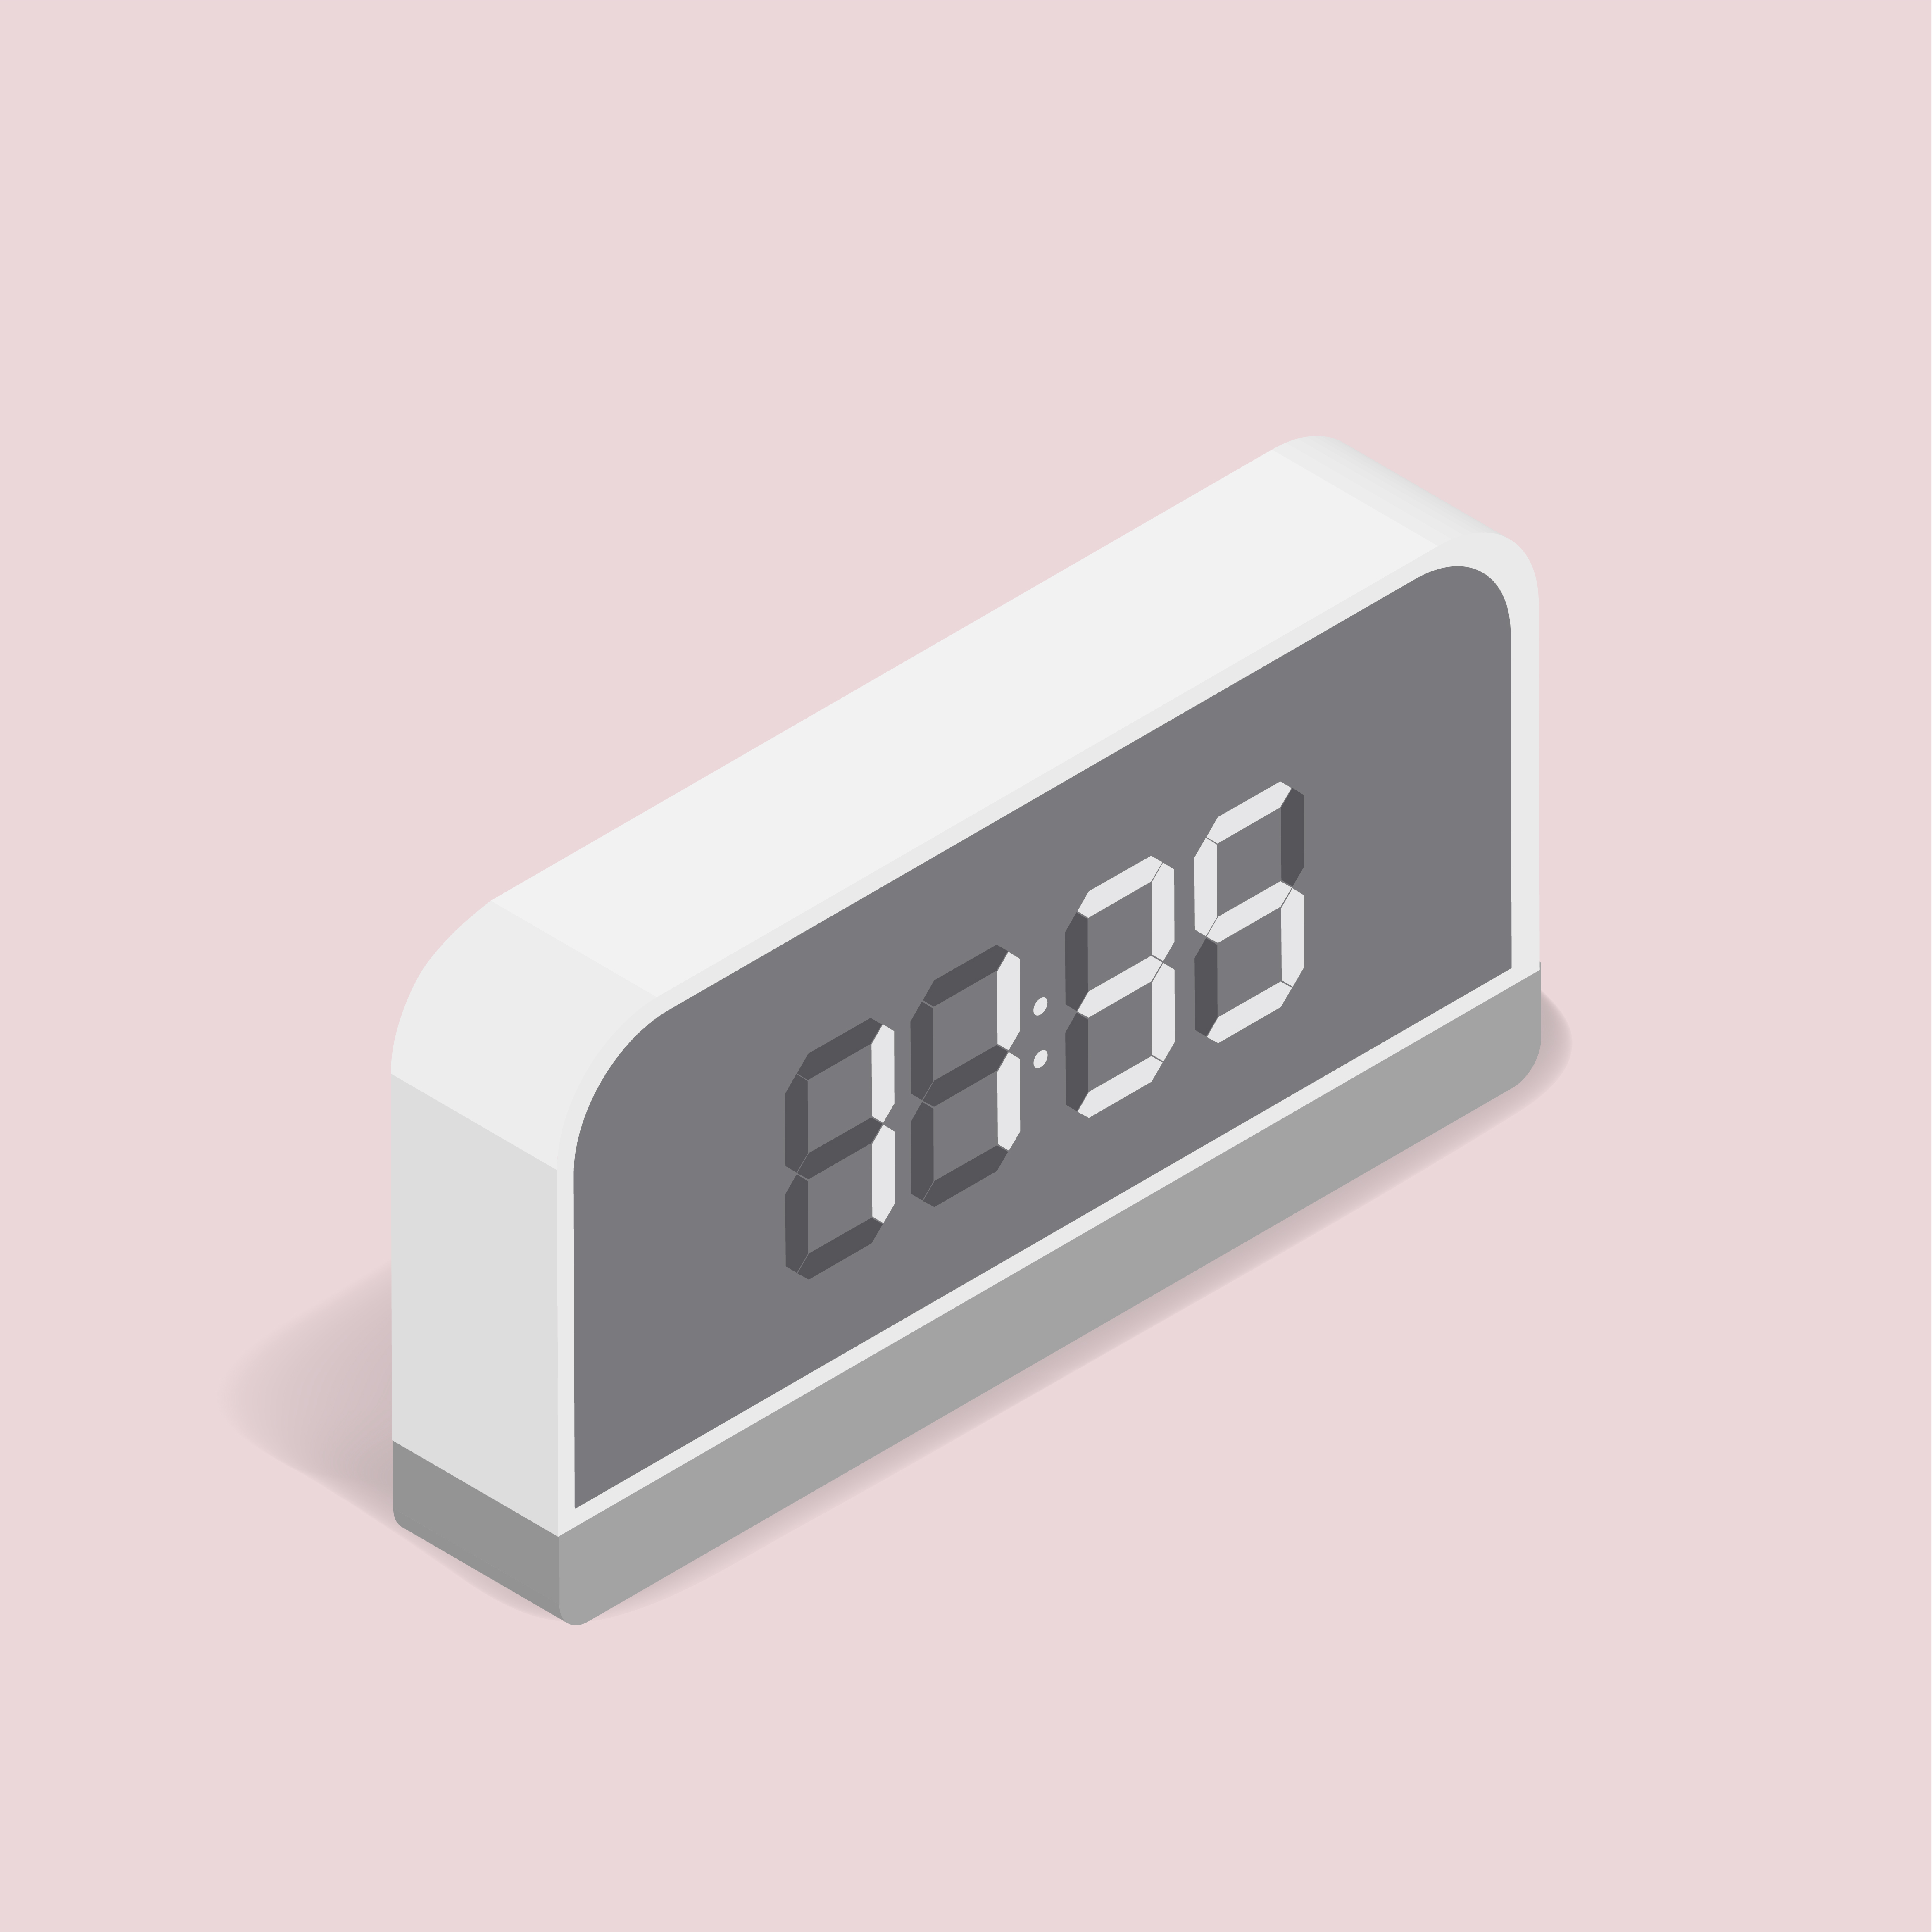 Vector image of digital alarm clock icon - Download Free Vectors ...